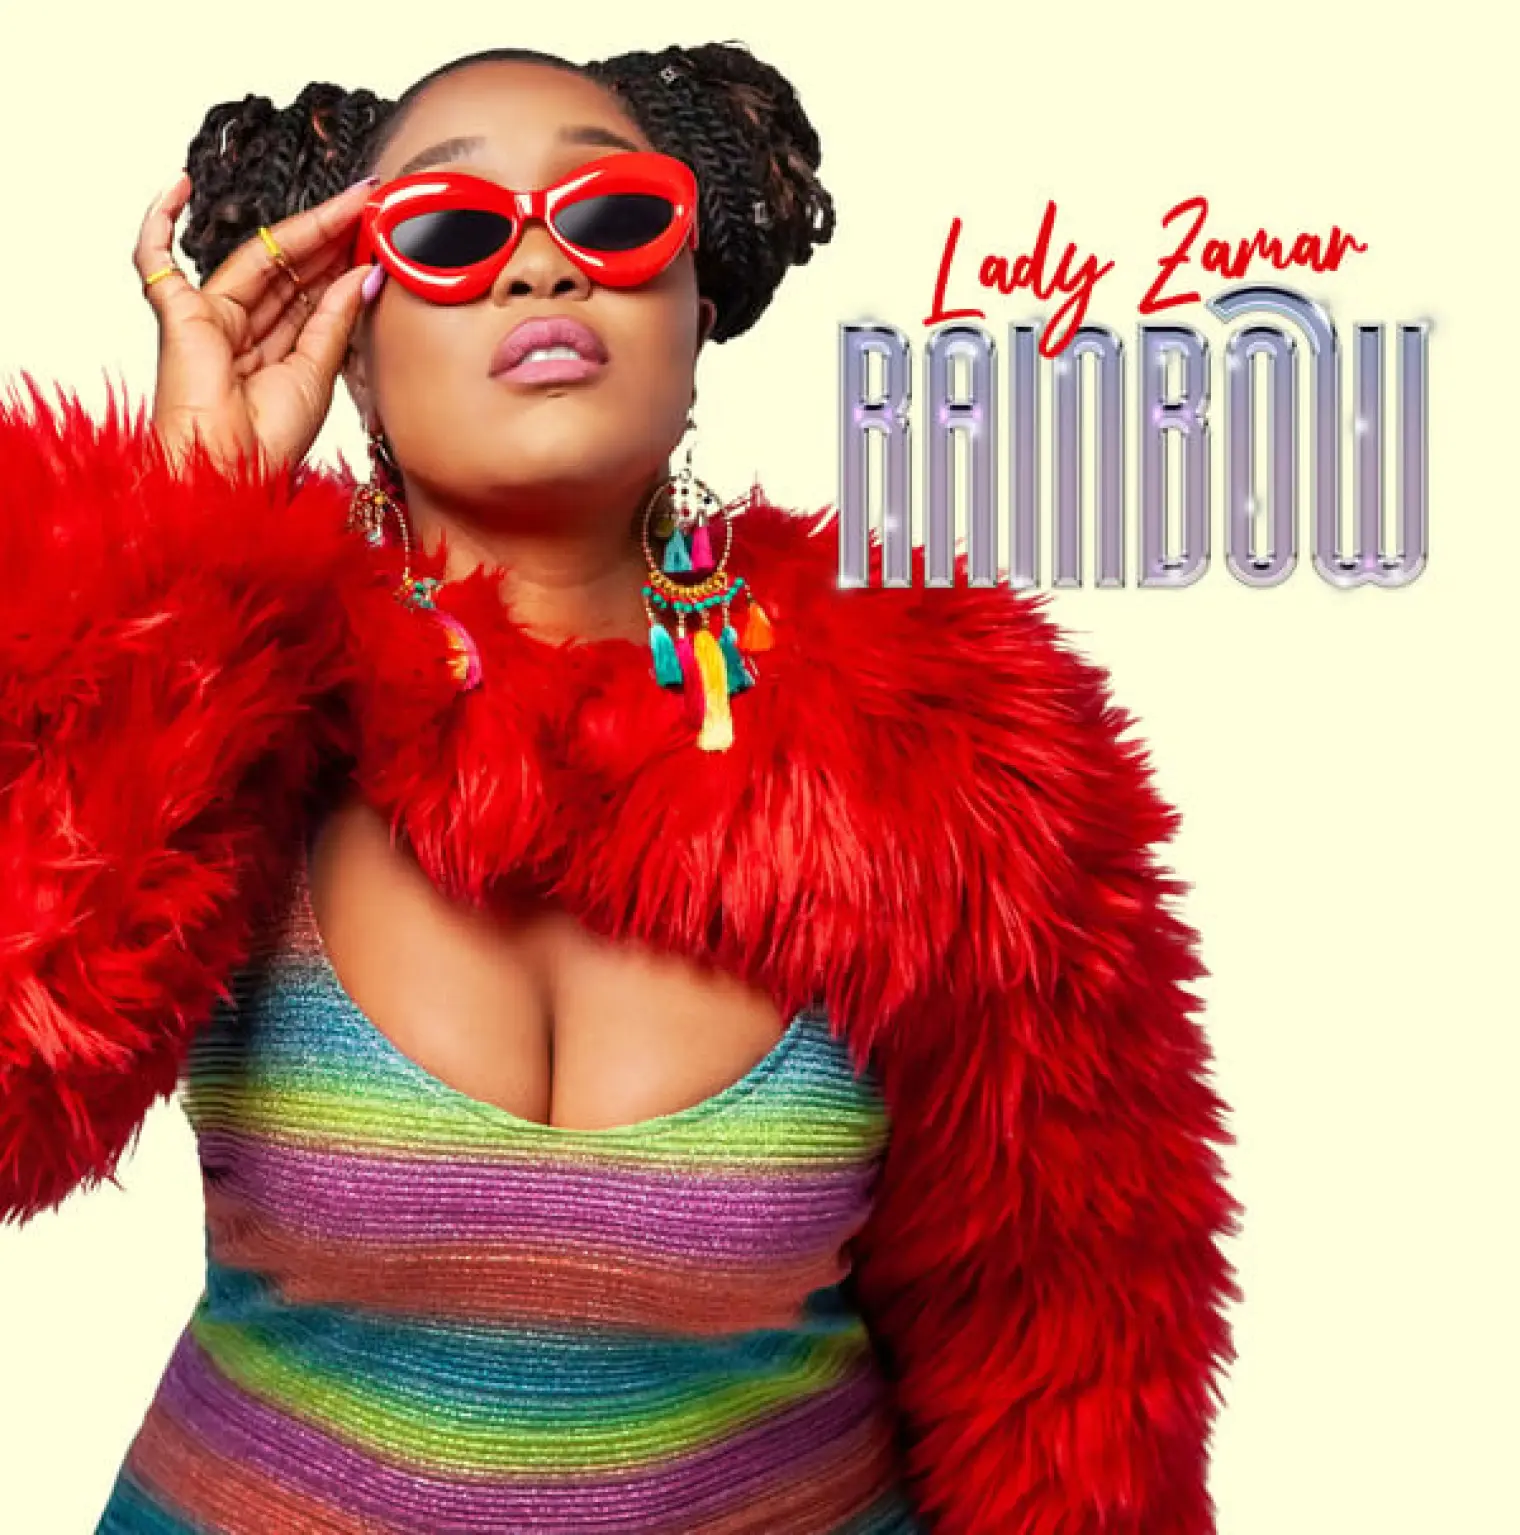 Rainbow -  Lady Zamar 